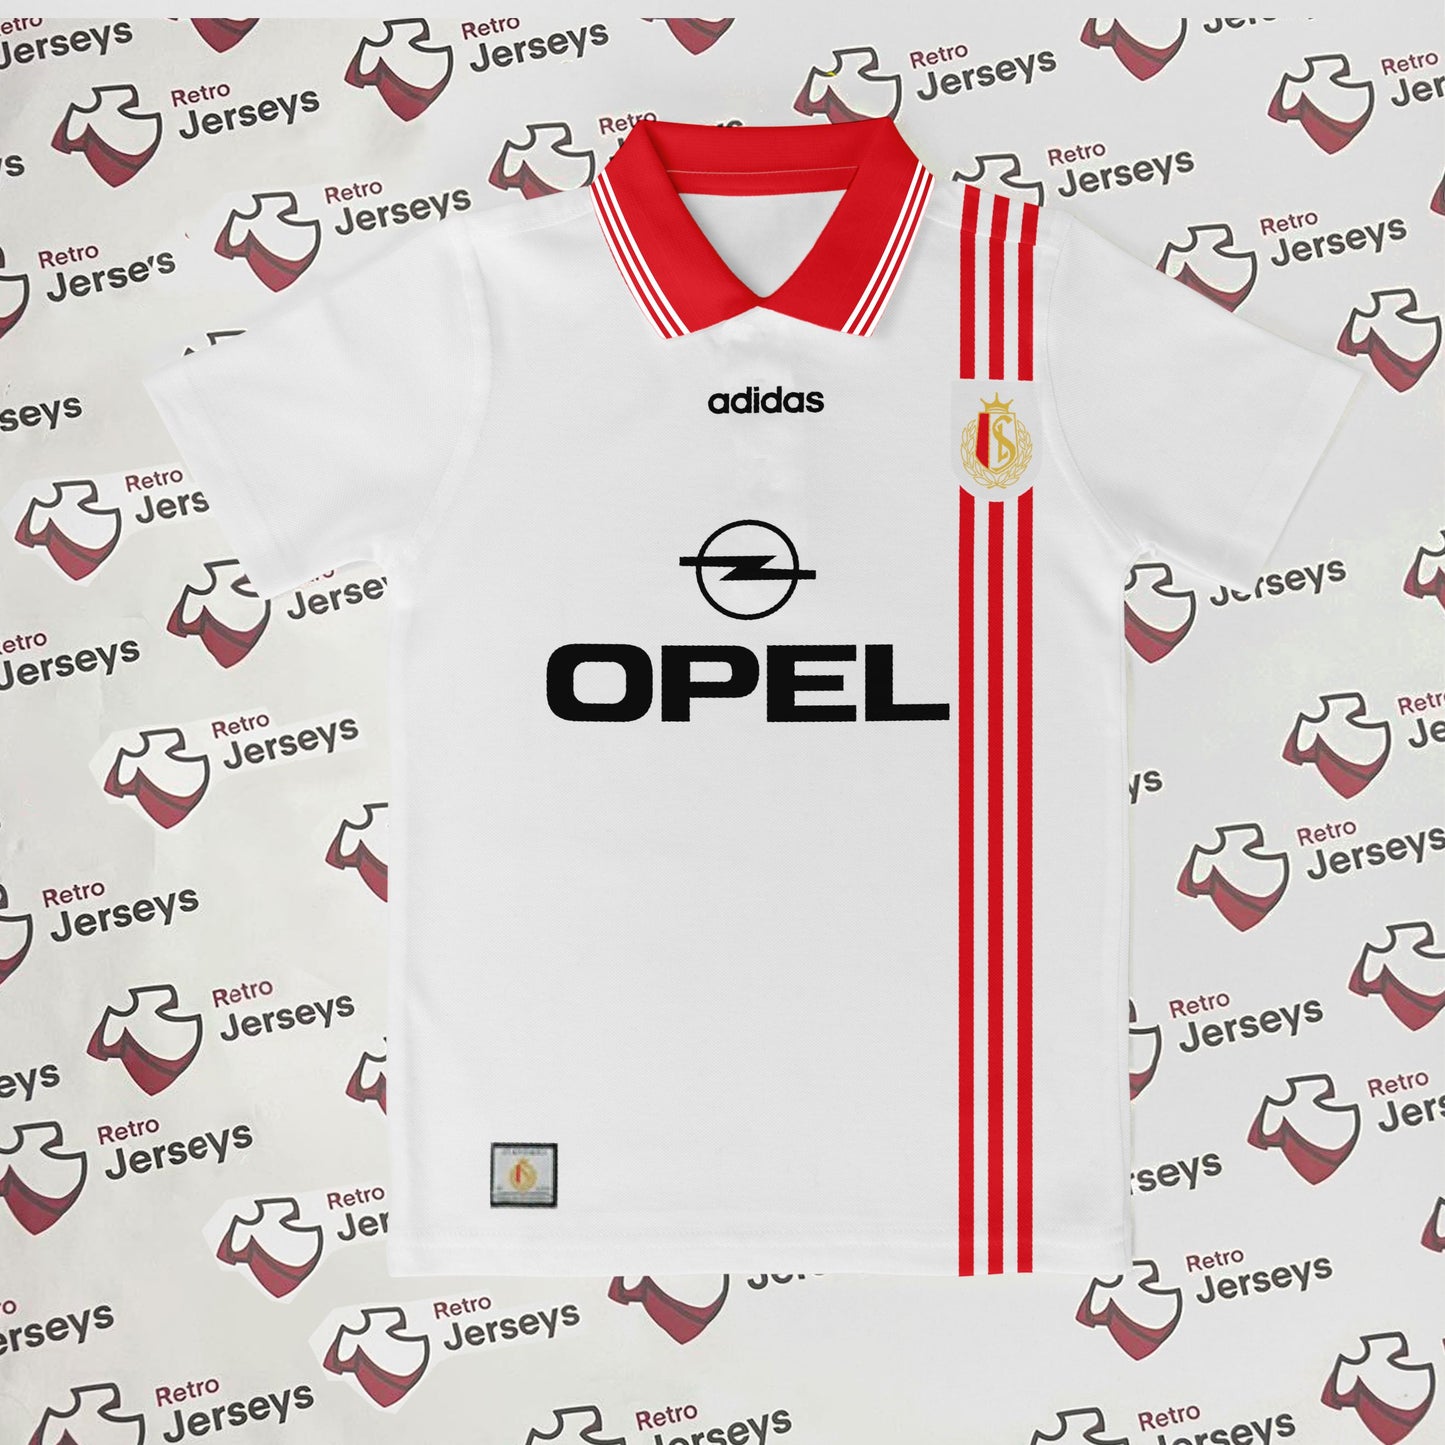 Standard Liege Shirt 1996-1997 Away - Retro Jerseys, Standard Liège Retro Shirt - Retro Jerseys